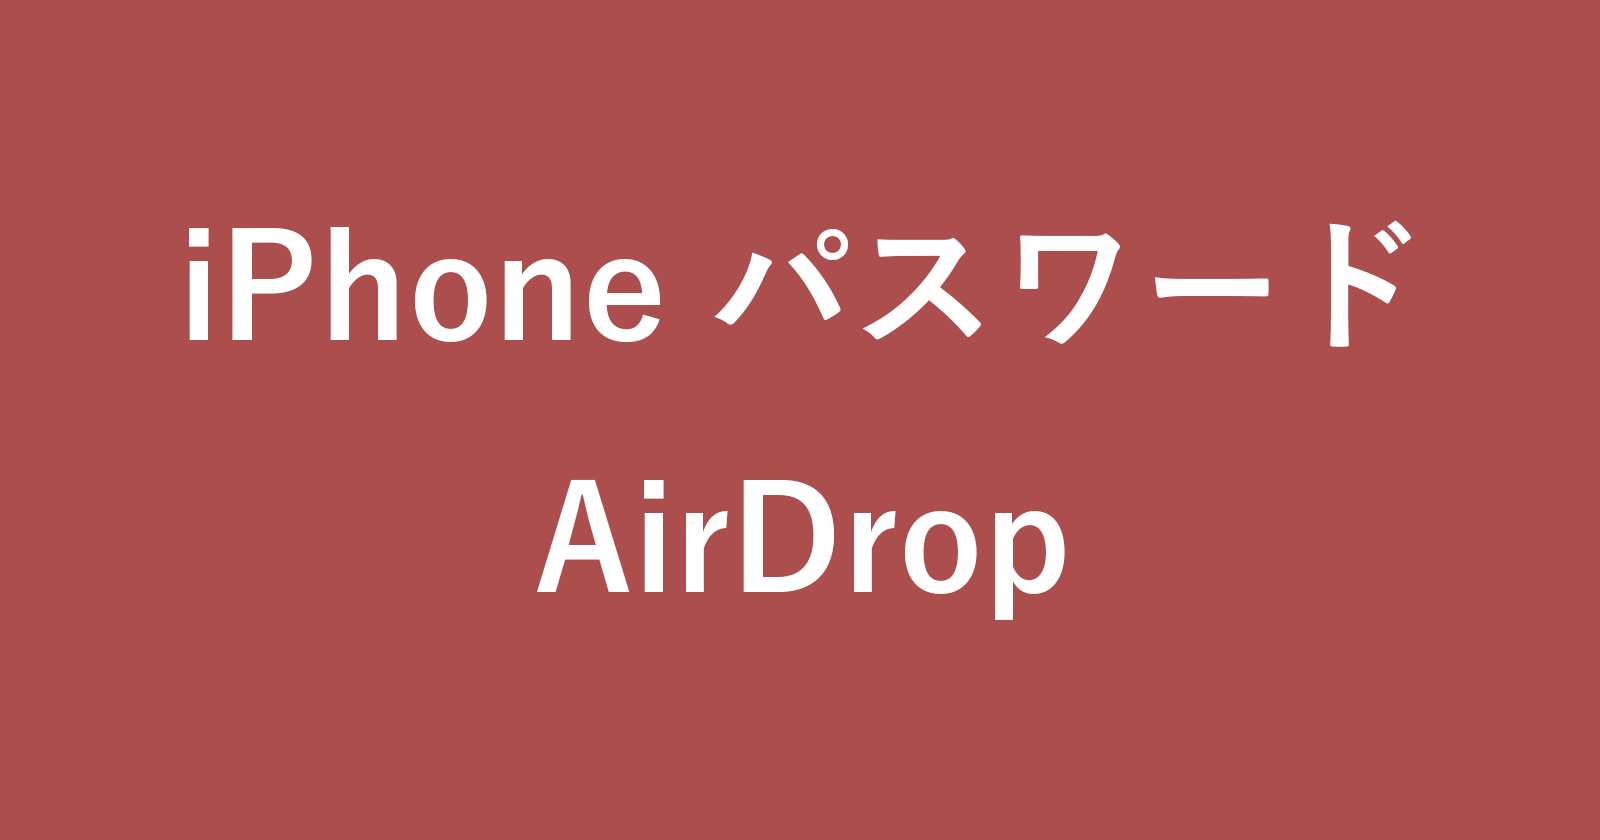 iphone airdrop password